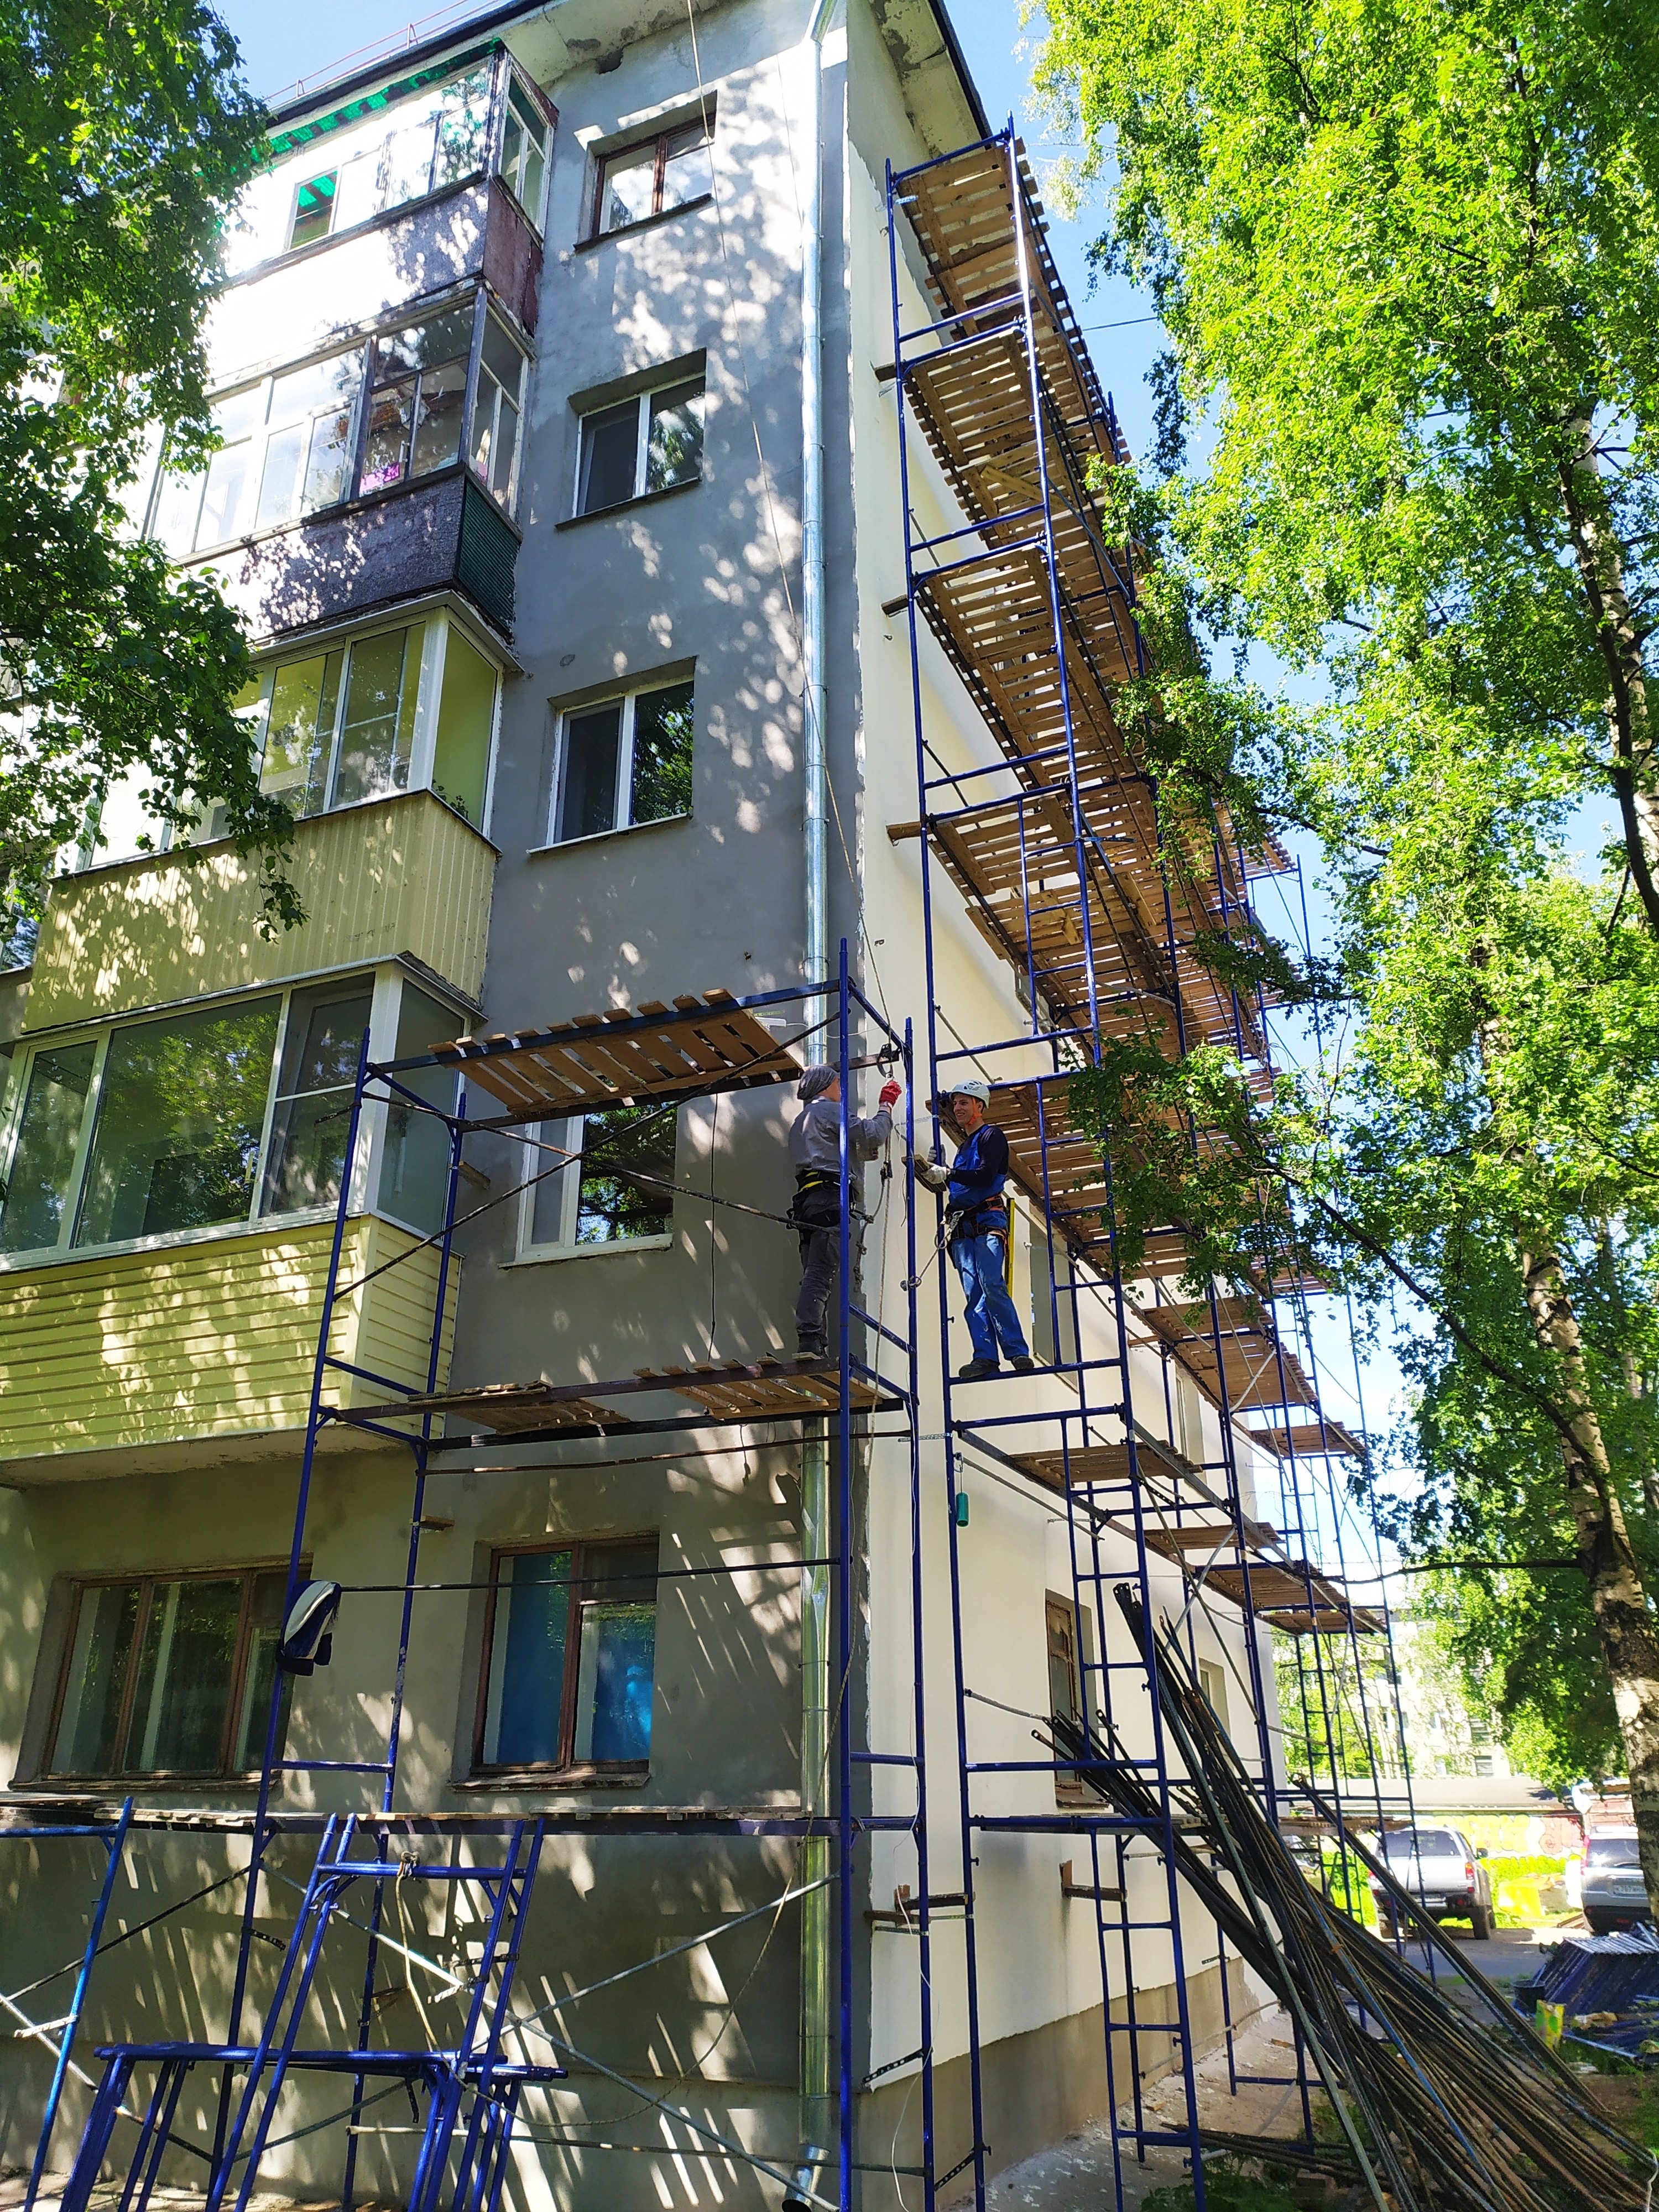 СРО "Союз профессиональных строителей" (г. Архангельск) выступает за применение более строгих правил при проведении строительных работ